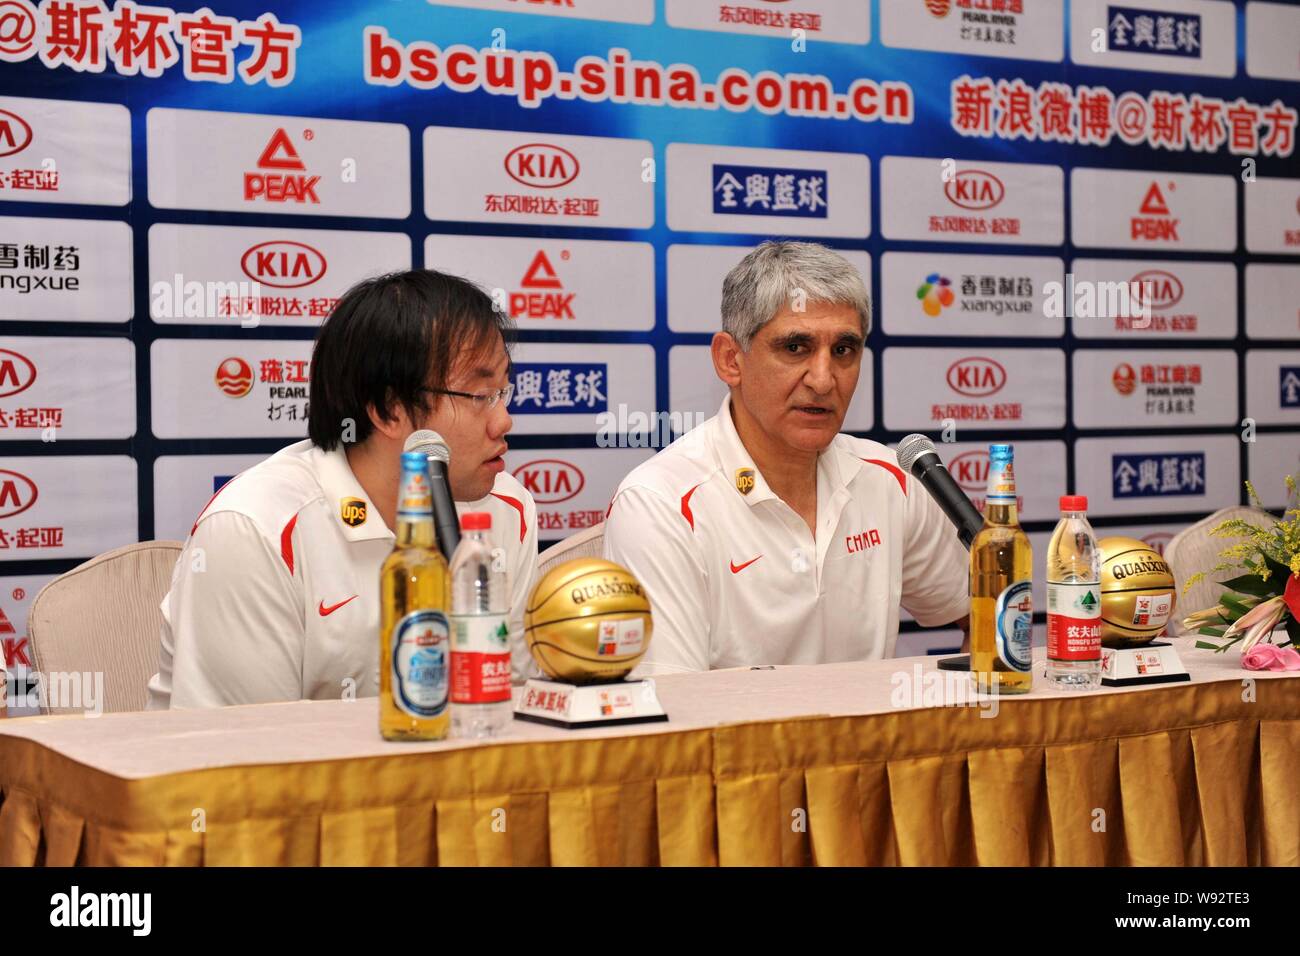 Panagiotis Giannakis, droite, le nouveau sélectionneur de l'équipe de basket-ball de Mens de Chine, assiste à une conférence de presse pour la Coupe Continentale 2013 Stankovic j Banque D'Images